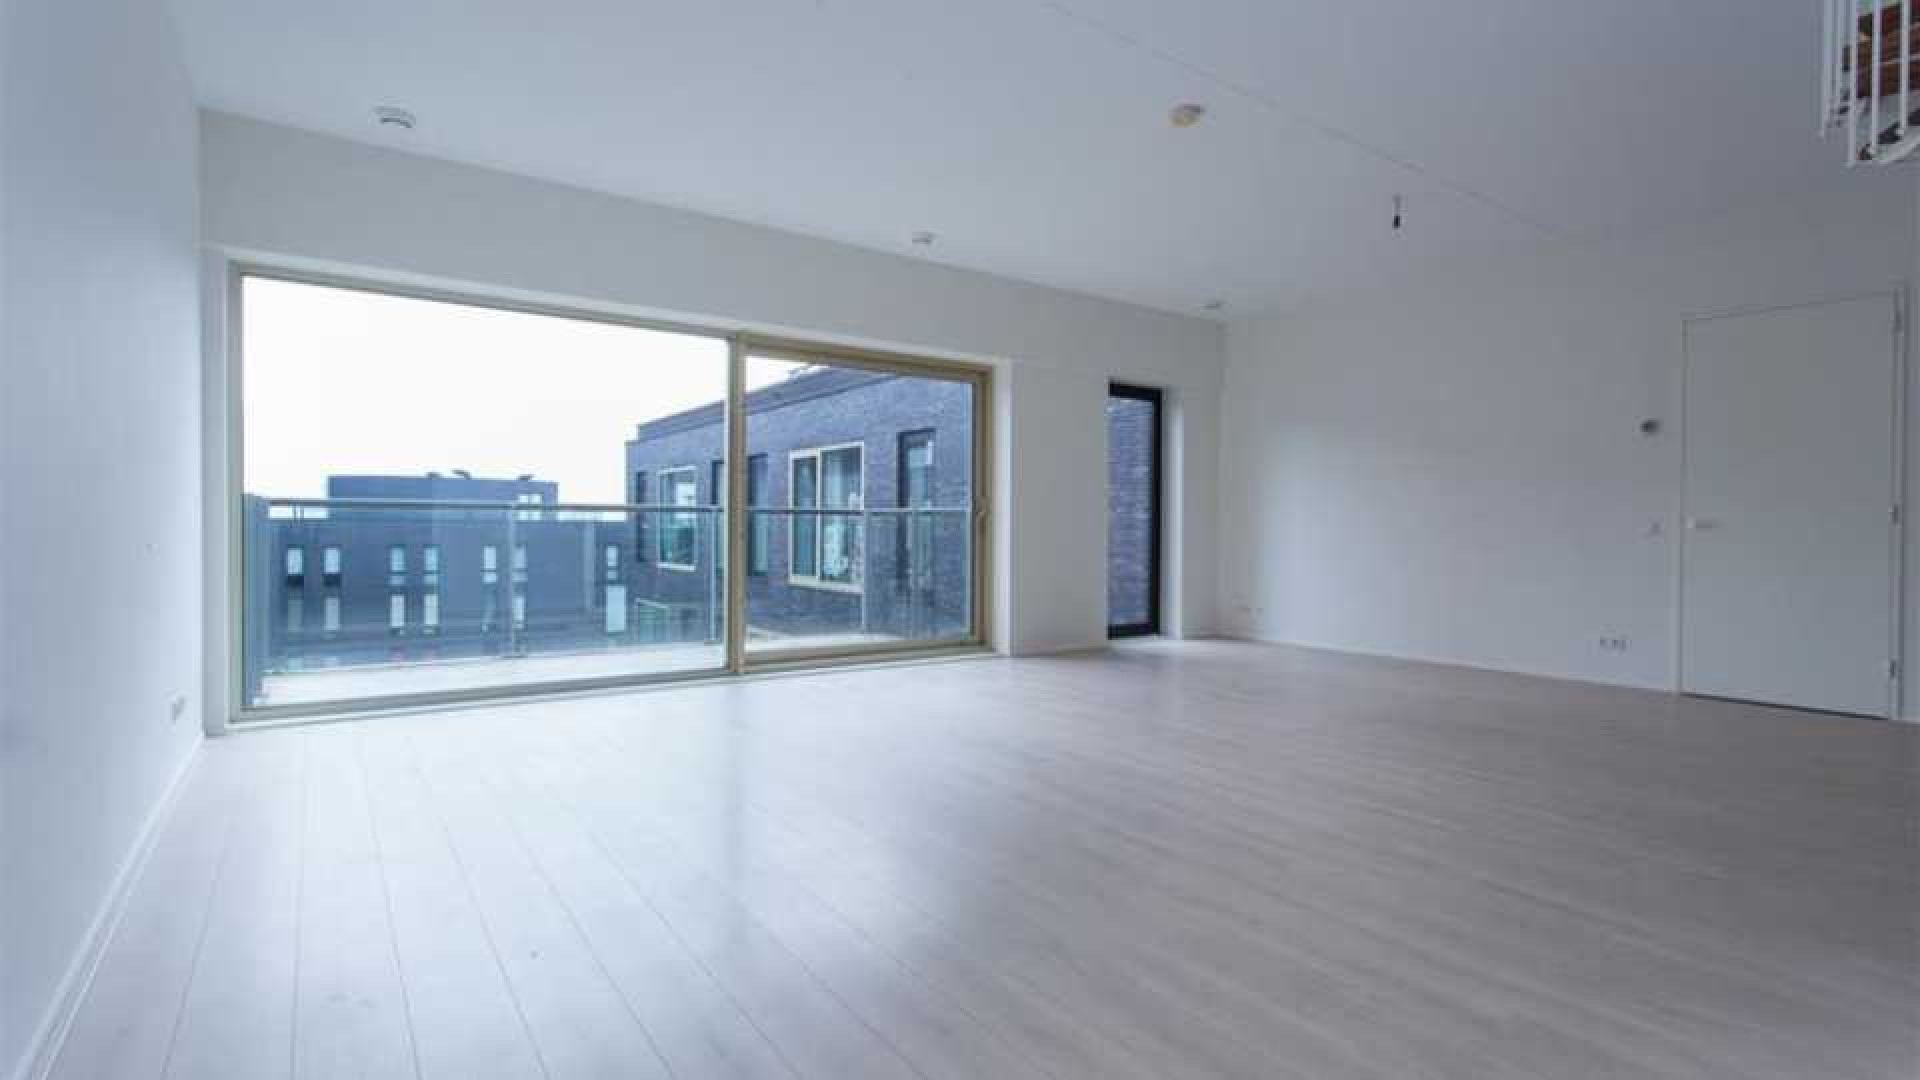 Ajax voetballer Joel Veltman huurt zeer luxe appartement aan de Zuid As in Amsterdam. Zie foto's 10